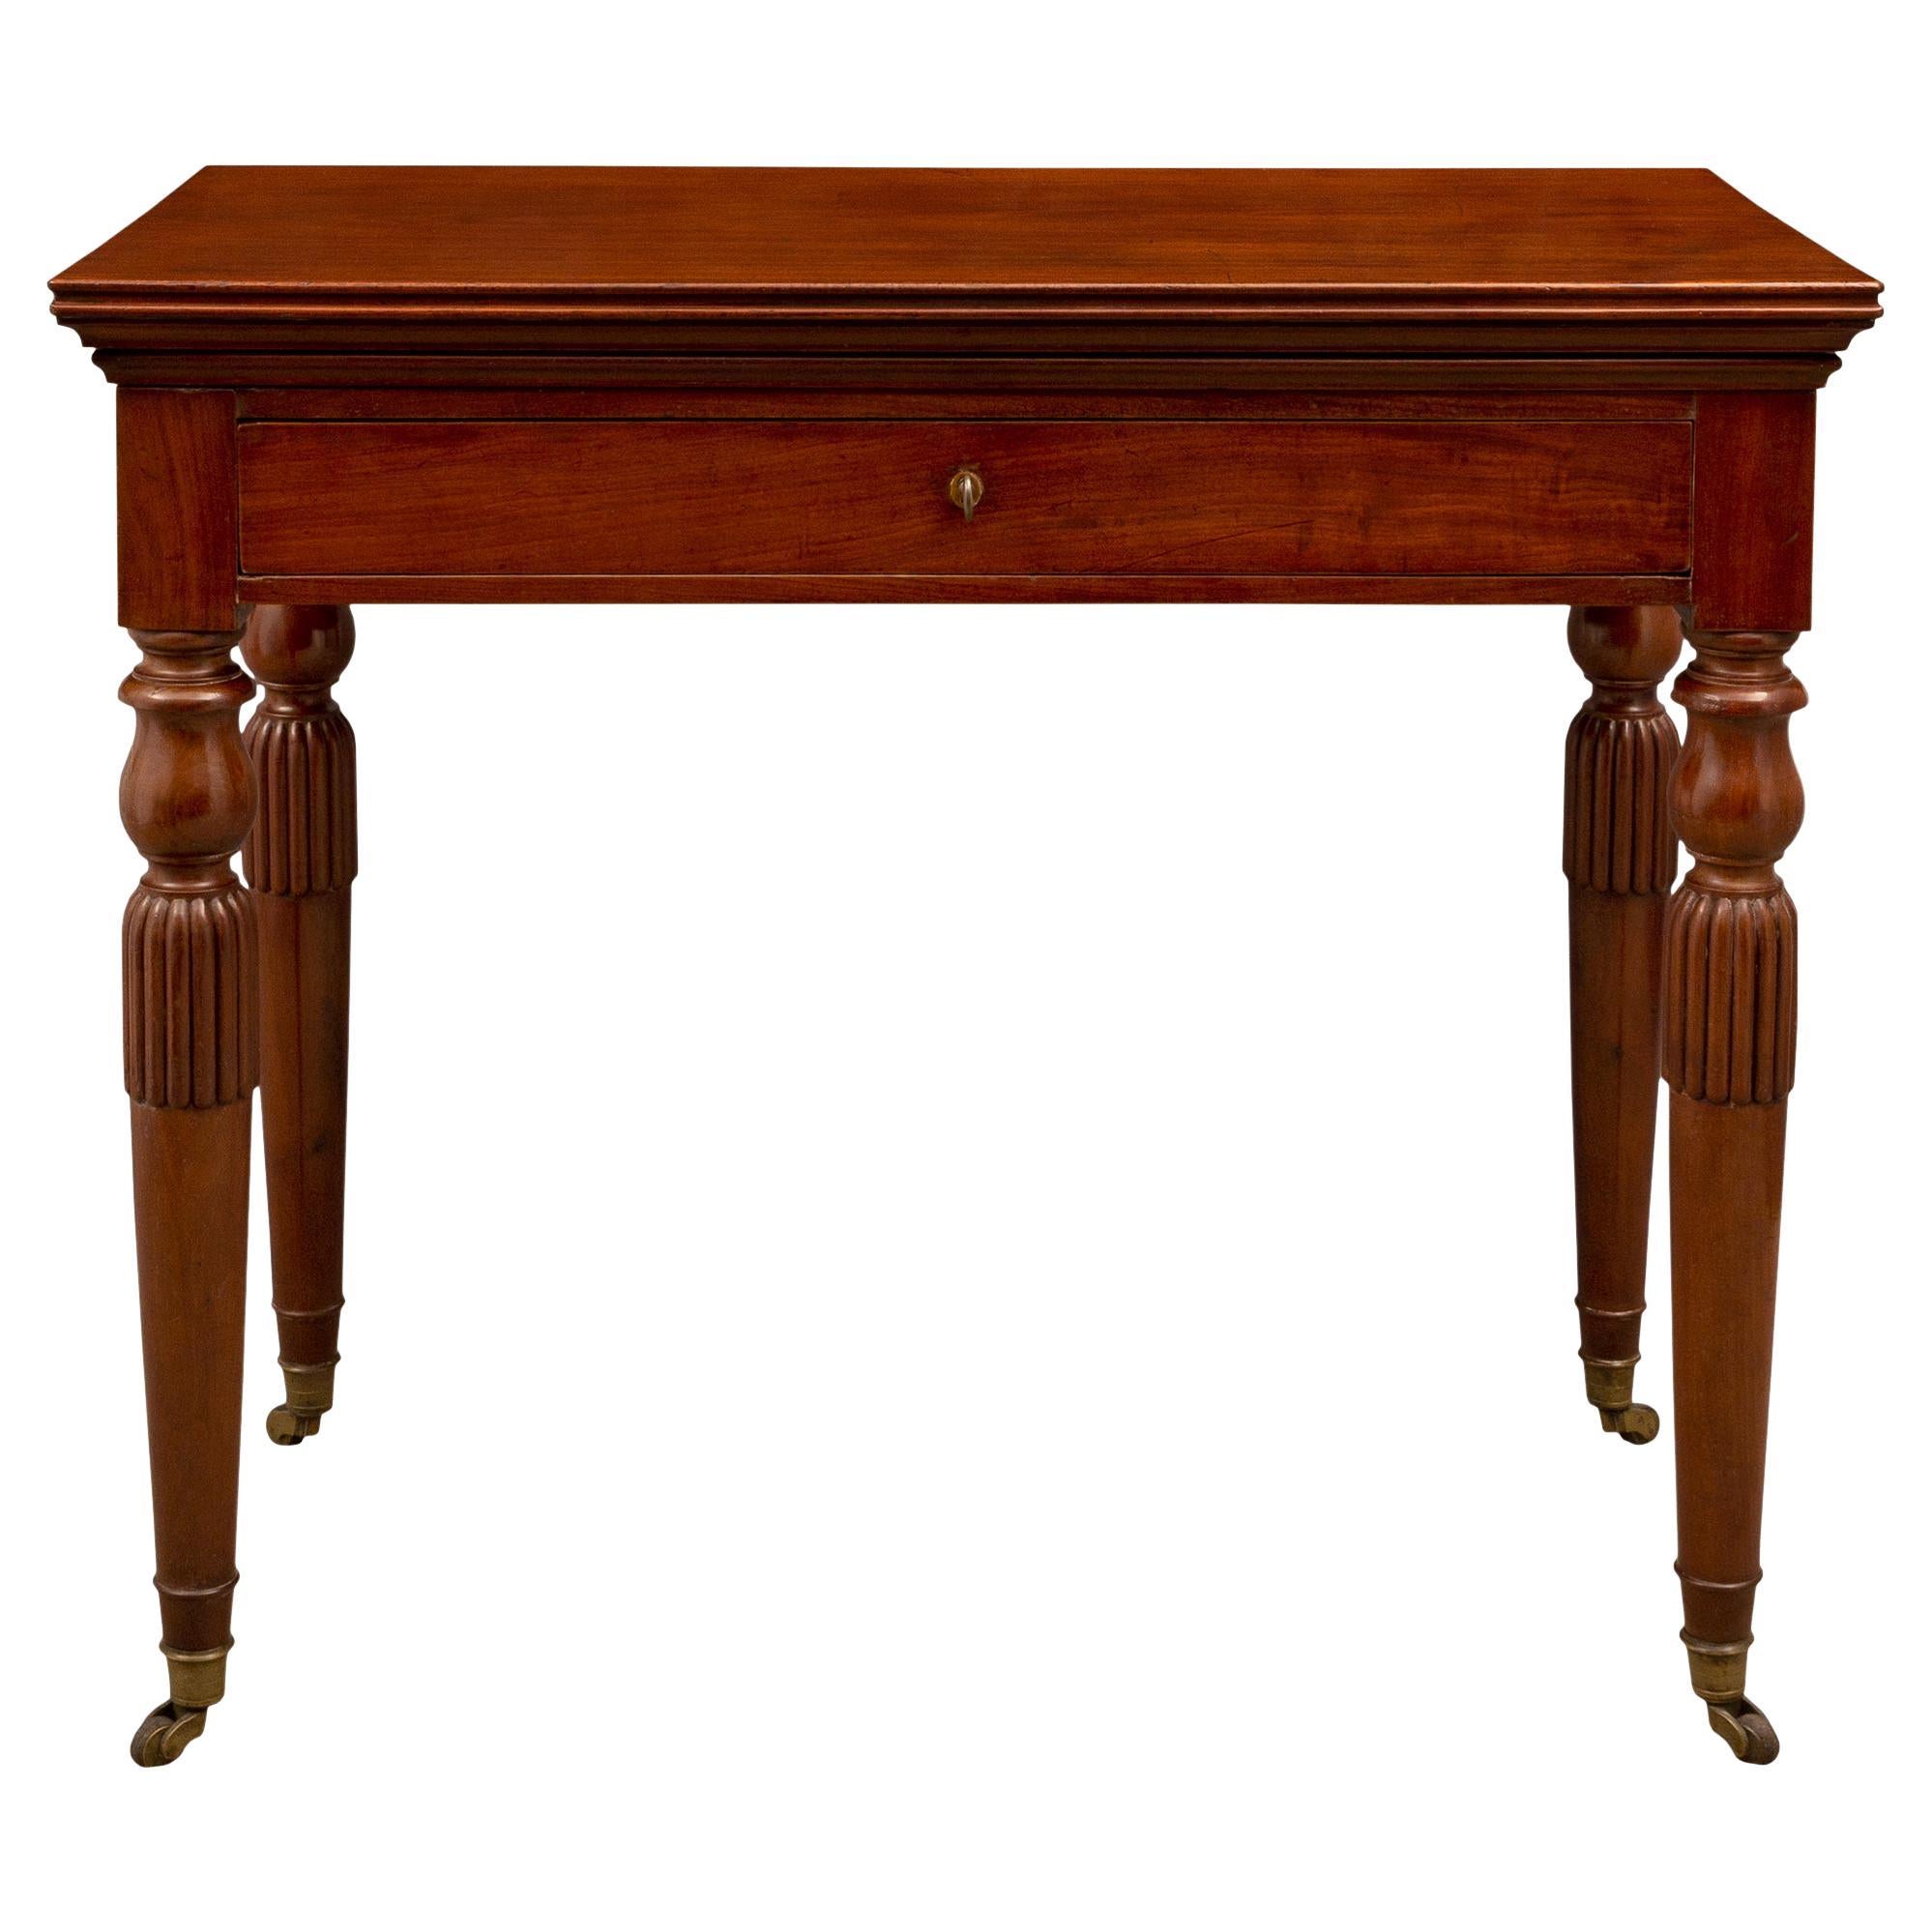 Mahagoni-Beistelltisch/Schreibtisch aus dem frühen 19. Jahrhundert aus der Louis-Philippe-Periode